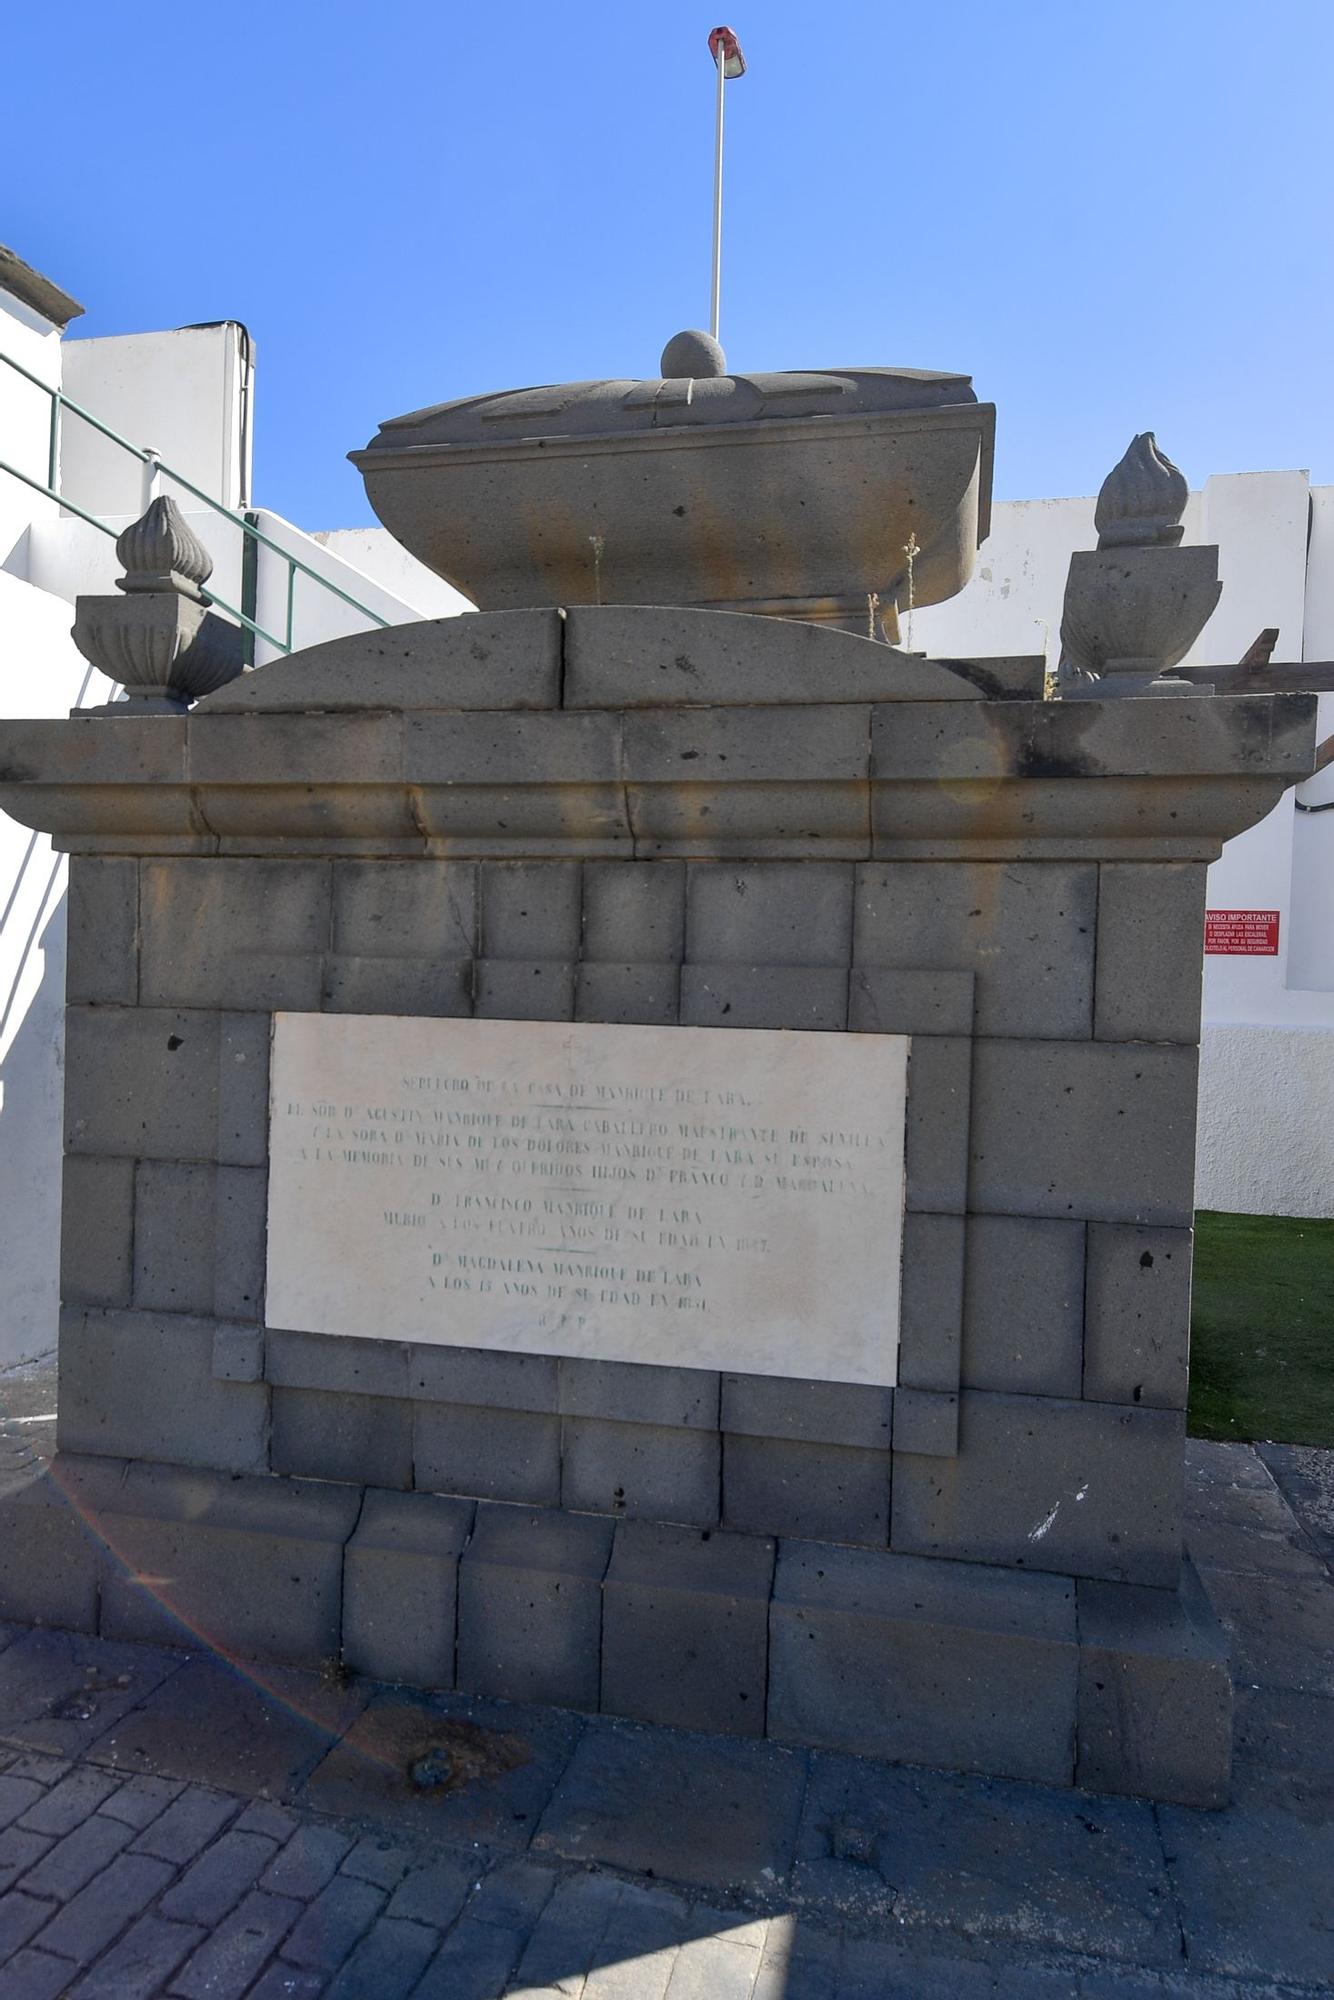 El cementerio de Las Palmas, testigo de las epidemias históricas en Gran Canaria.